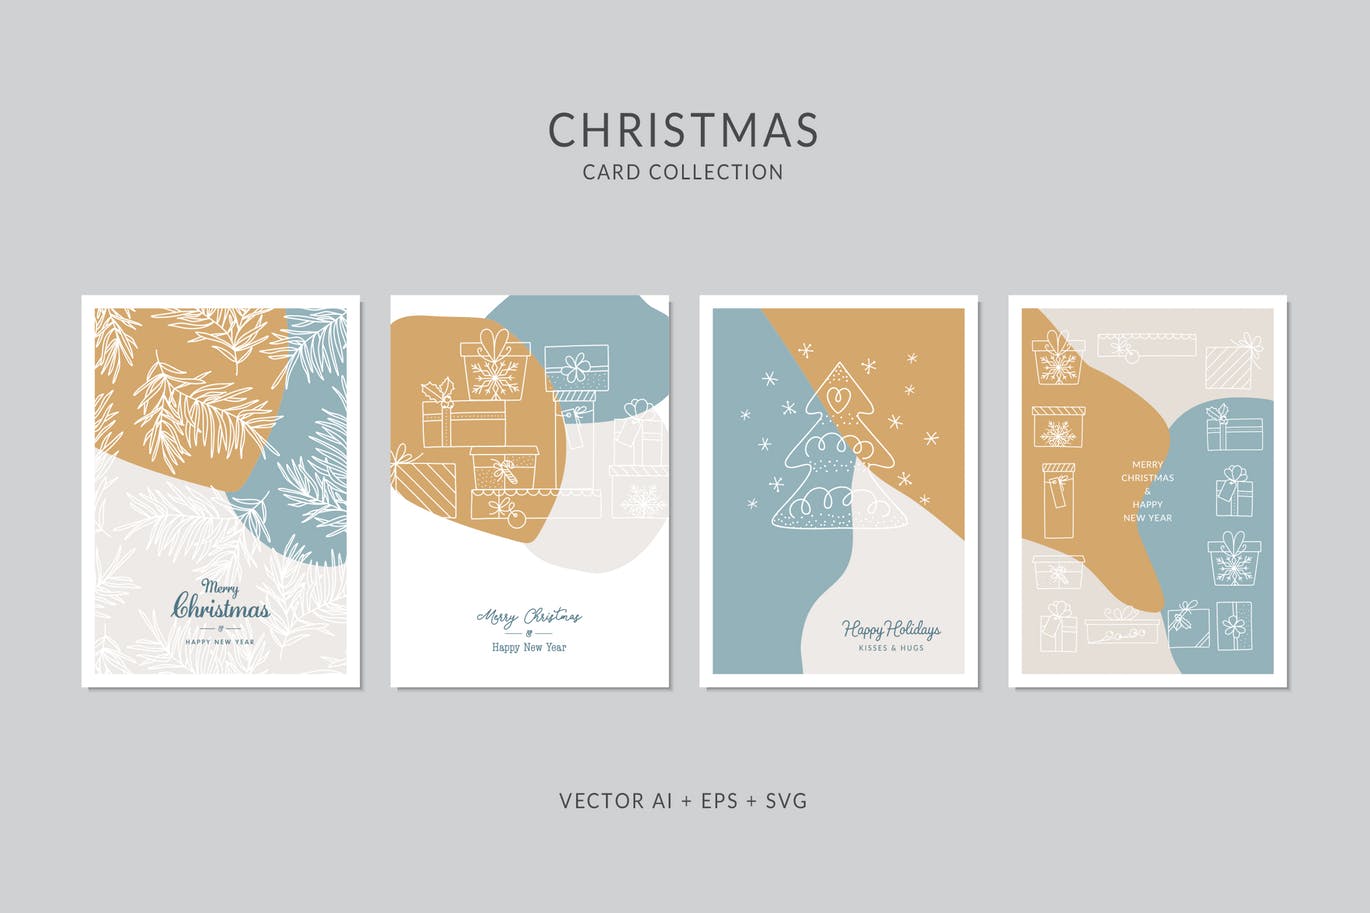 创意三色设计风格圣诞节贺卡矢量设计模板集v7 Christmas Greeting Card Vector Set插图